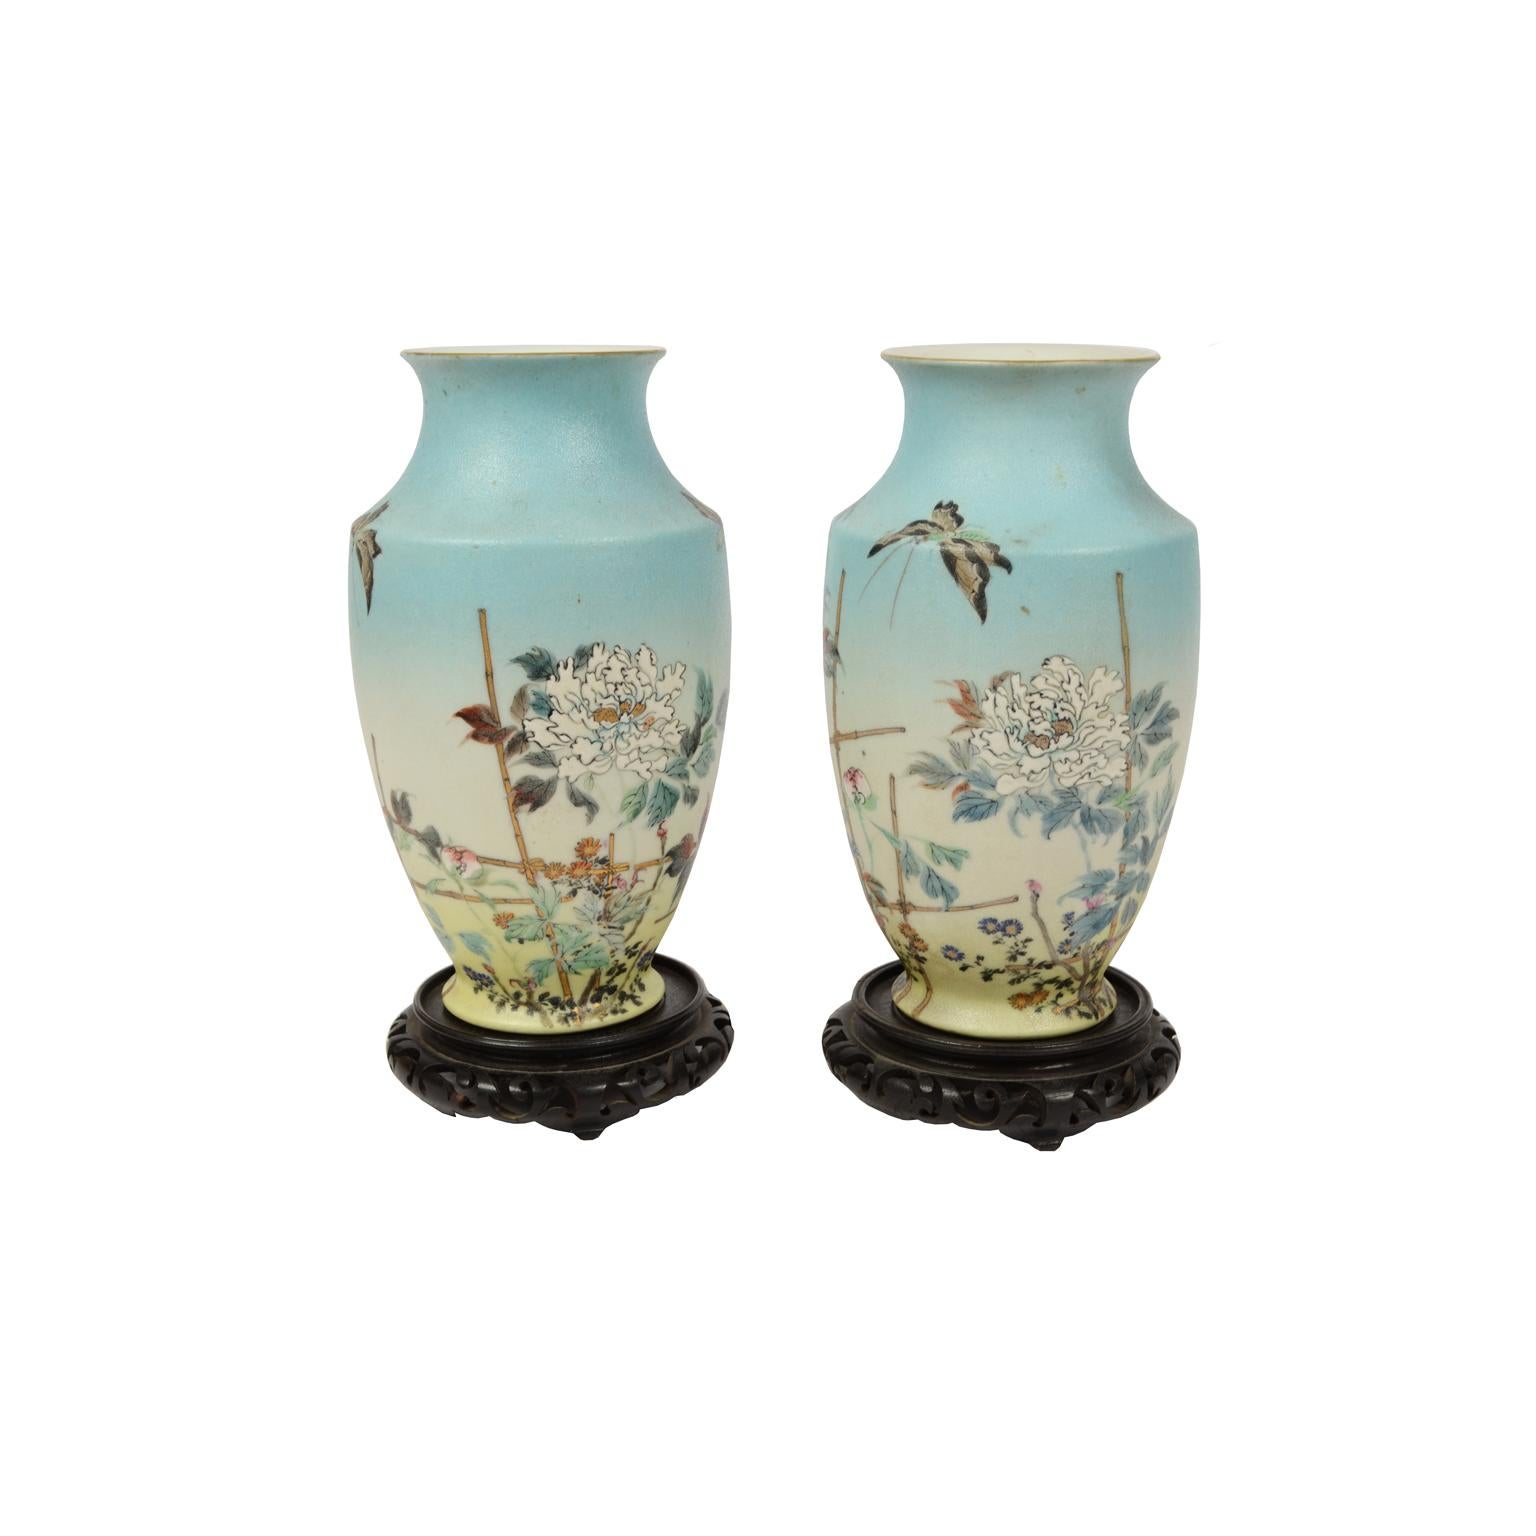 Paire de vases en porcelaine polychrome représentant des fleurs et des papillons décorés à la main, avec base en bois sculpté. Fabrication japonaise, début des années 1900, signée sur la base. 
Bon état. Dimensions : Hauteur 24,6 cm, diamètre de la